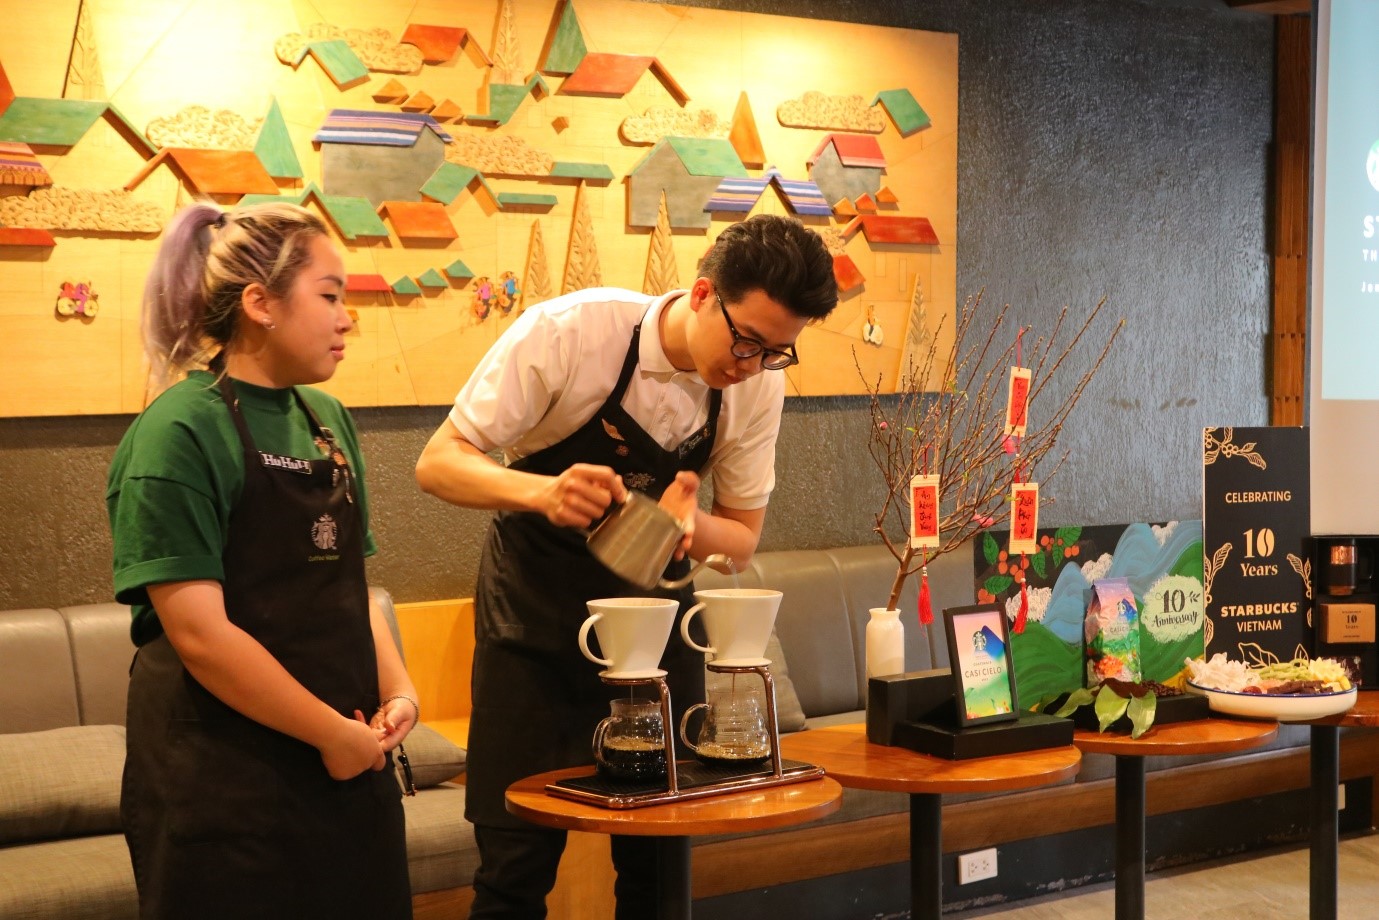 Kinh tế - Hành trình 10 năm Starbucks tại Việt Nam và mục tiêu tăng sự hiện diện trong năm 2023 (Hình 2).